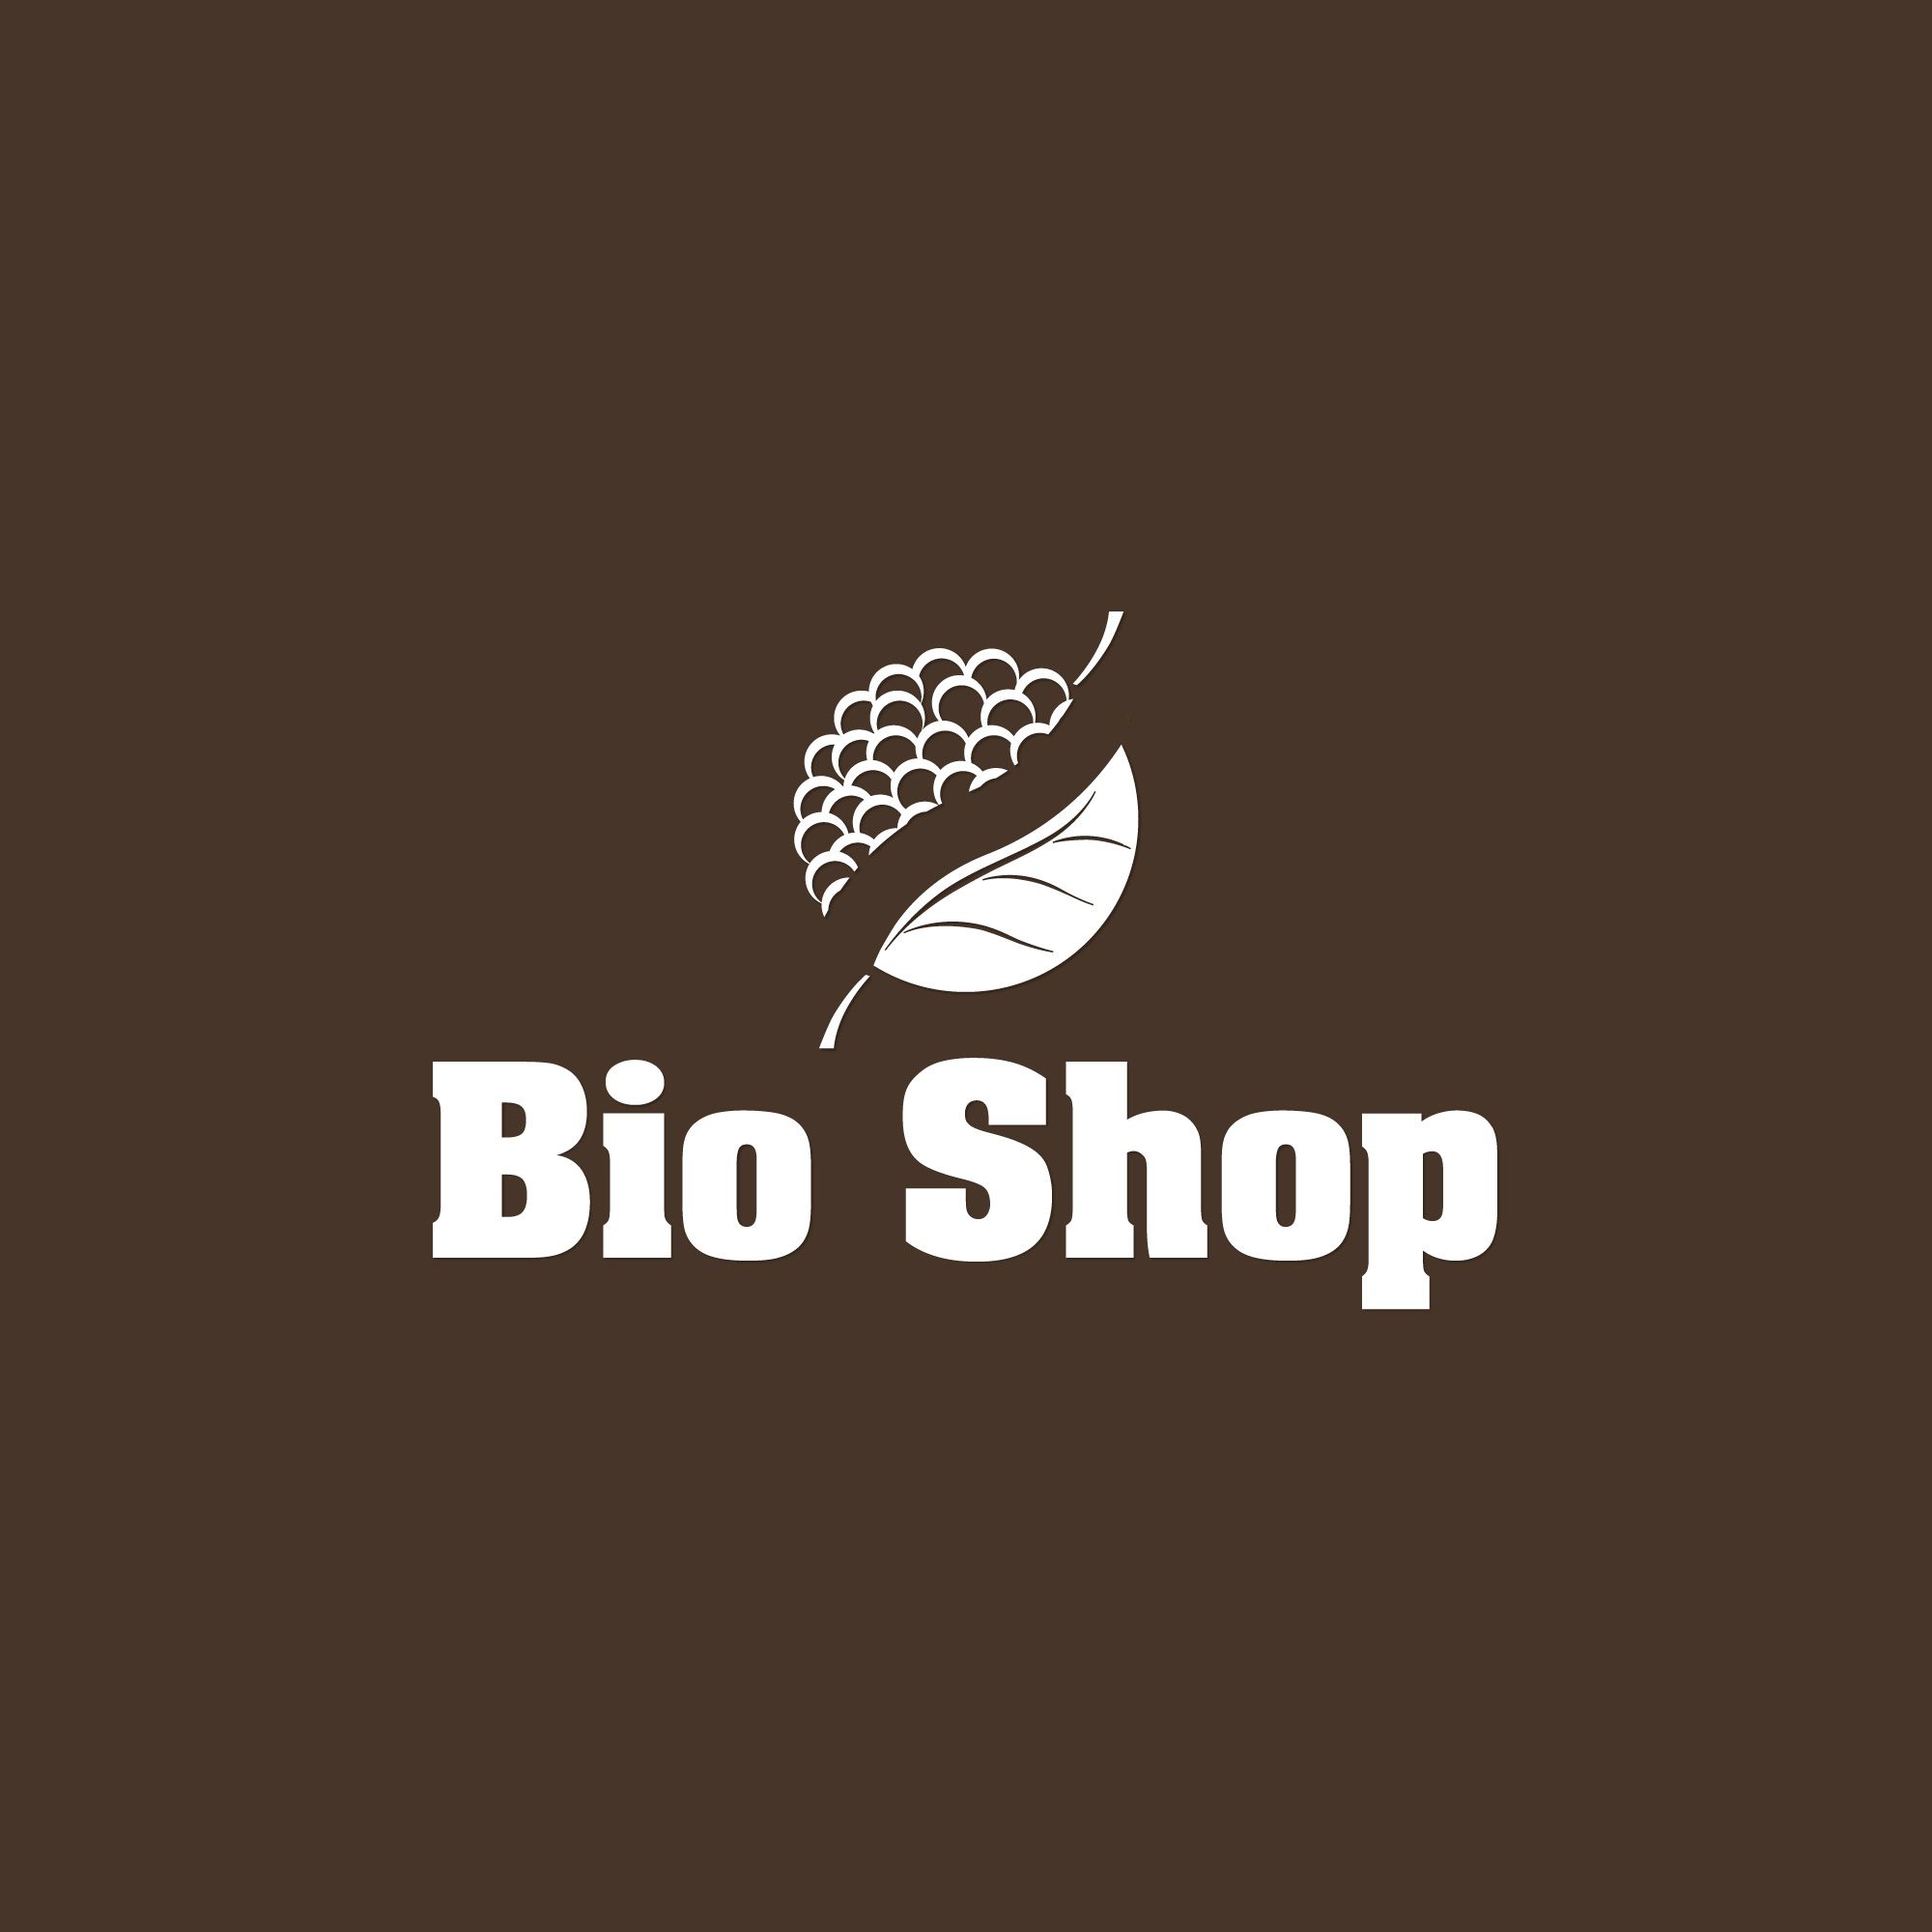 Продажа био продуктов - дизайнер gulas